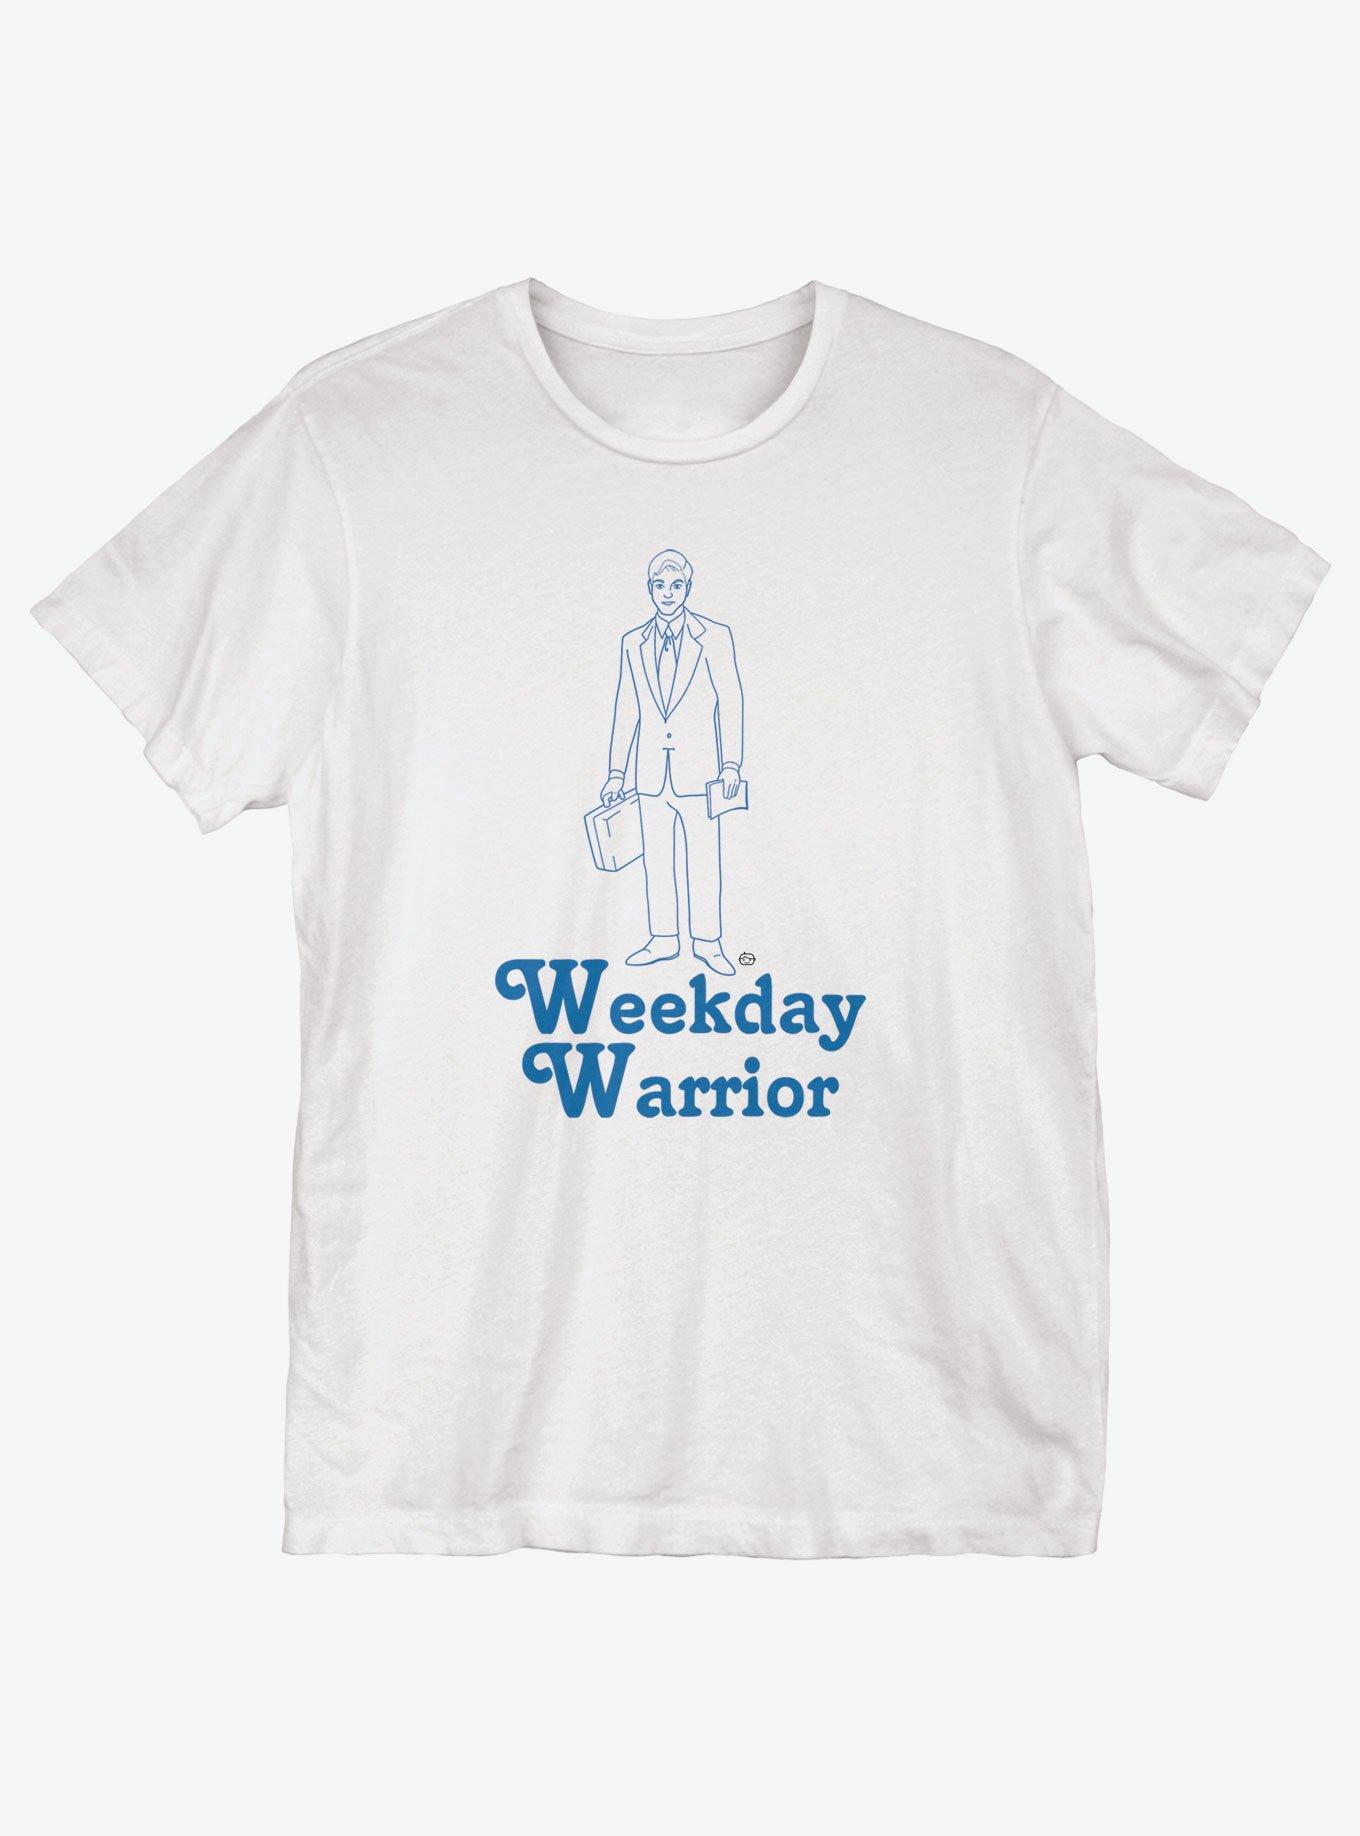 Weekday Warrior T-Shirt